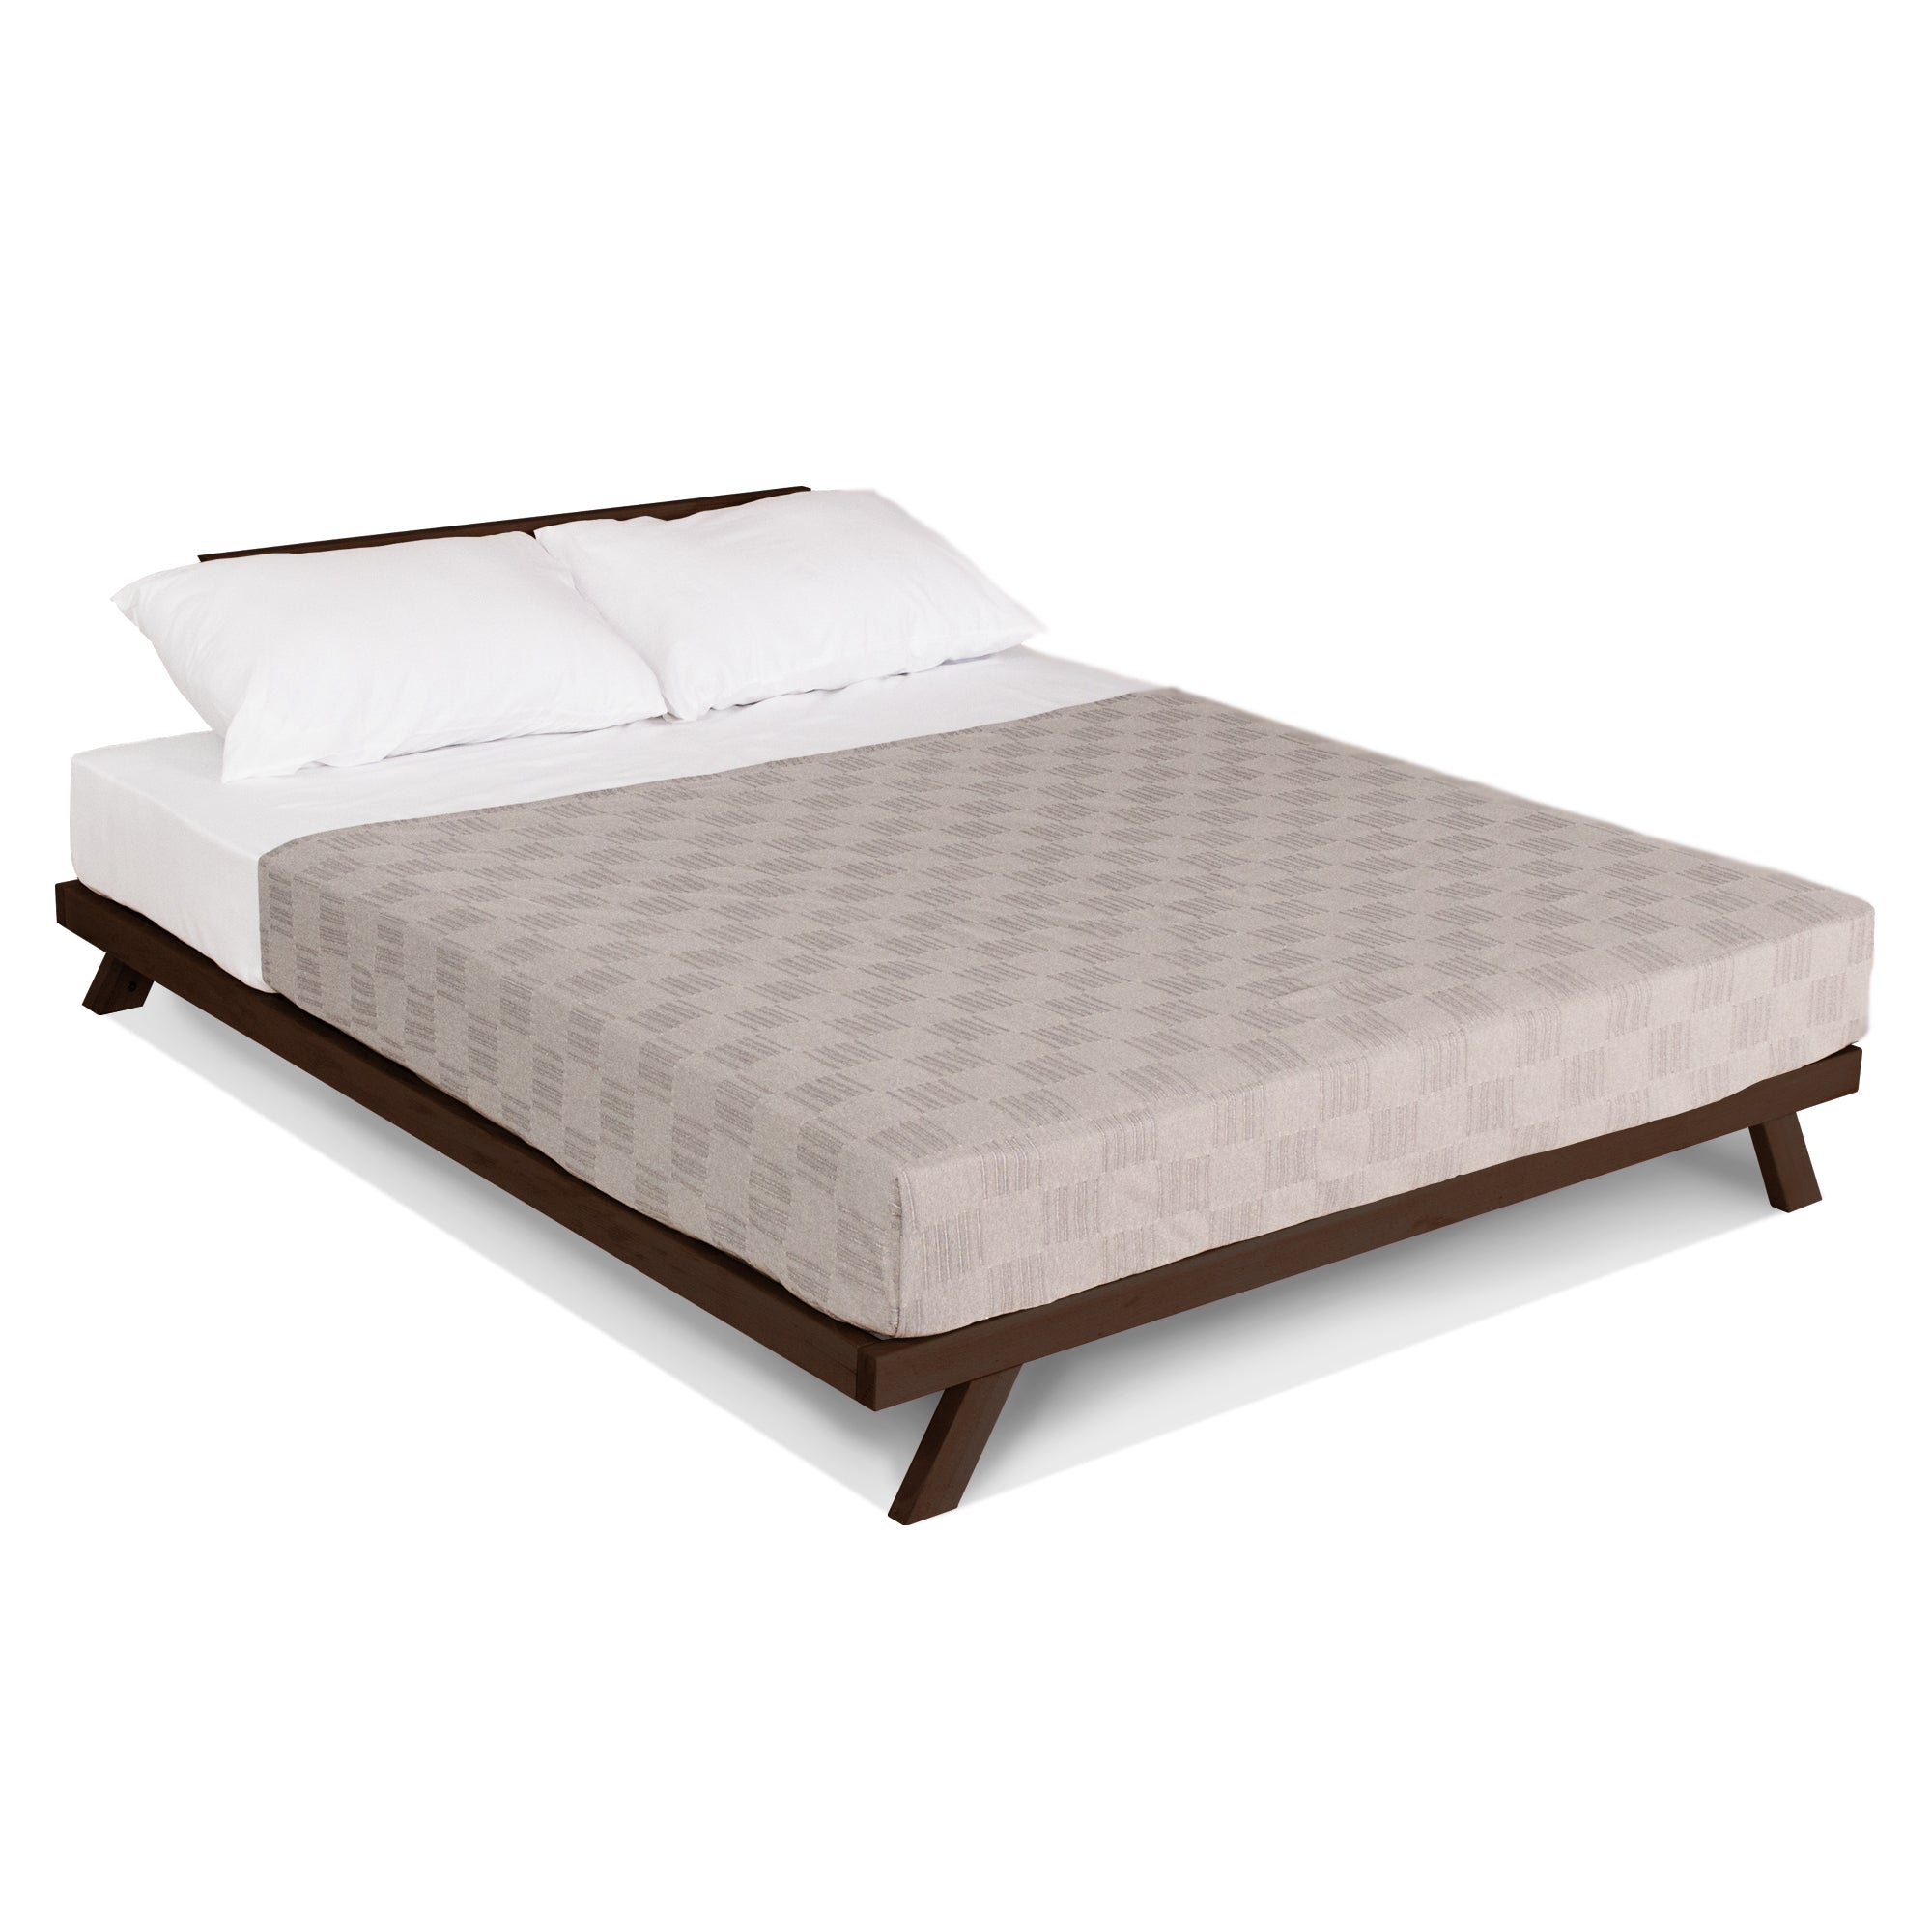 Двуспальная кровать ALLEGRO, каркас шоколадного цвета